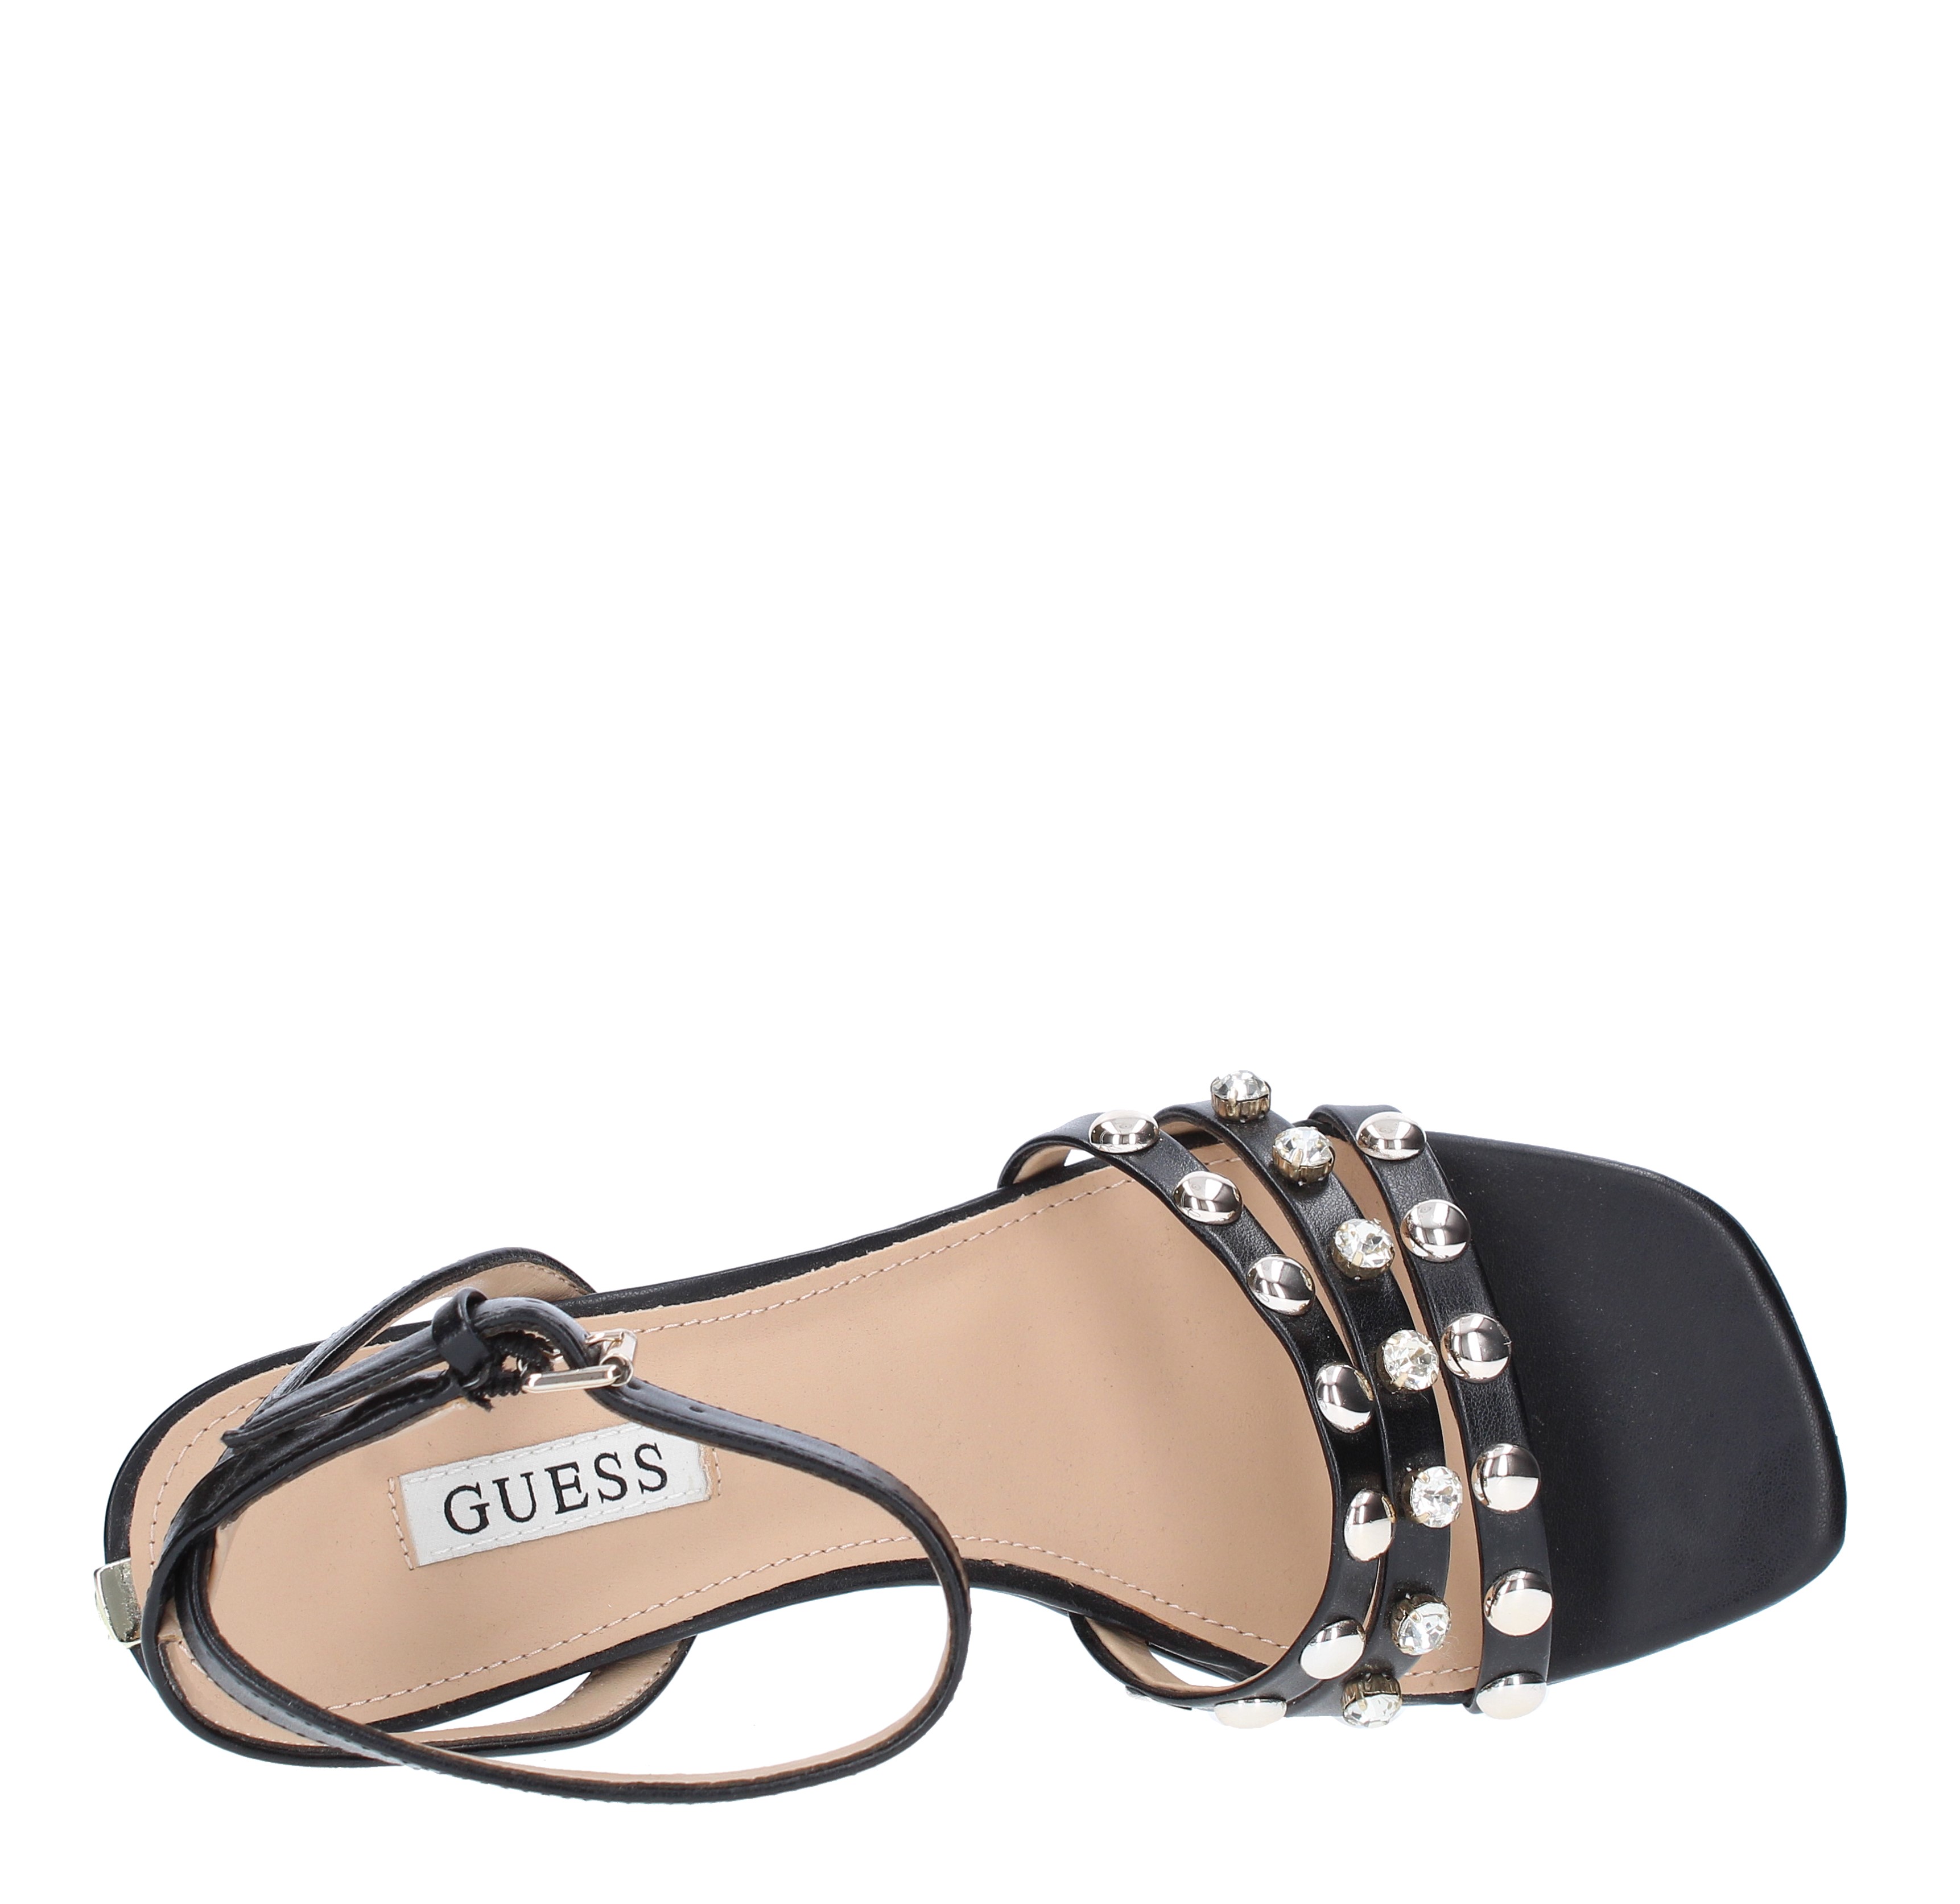 Sandals Black - GUESS - Ginevra calzature